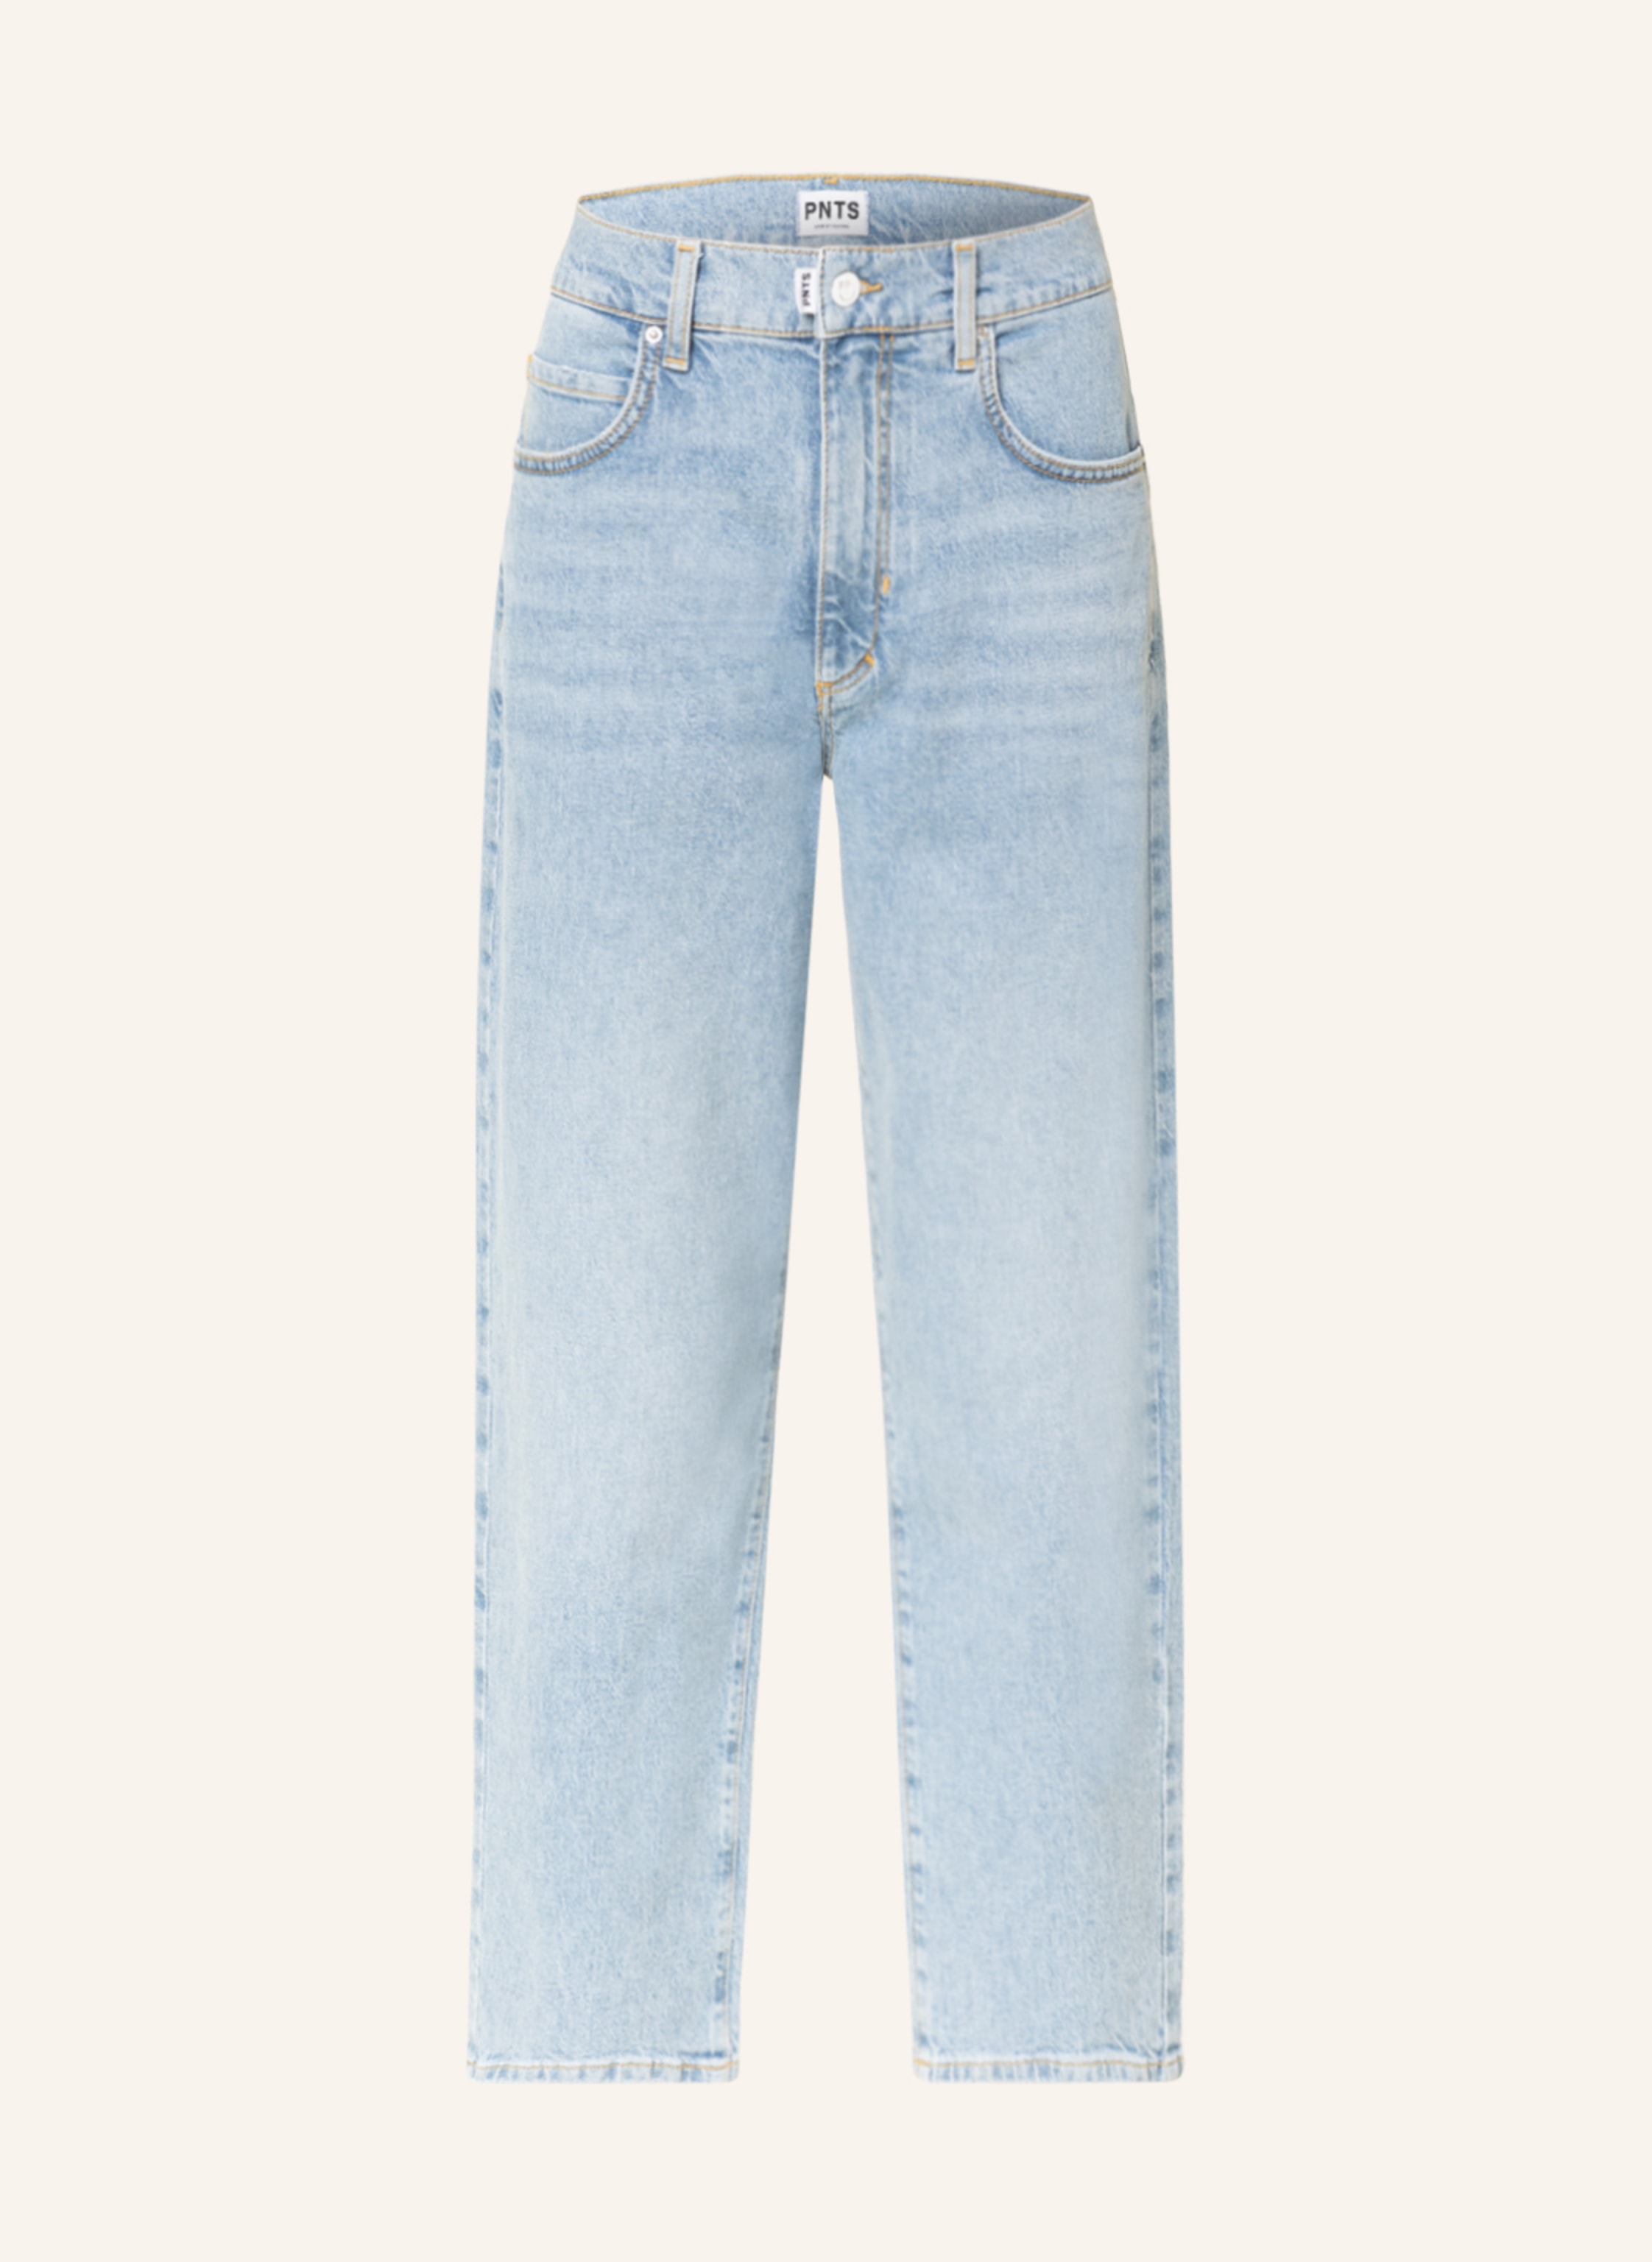 PNTS Mom jeans THE O-SHAPE in 26 vintage blue | Breuninger